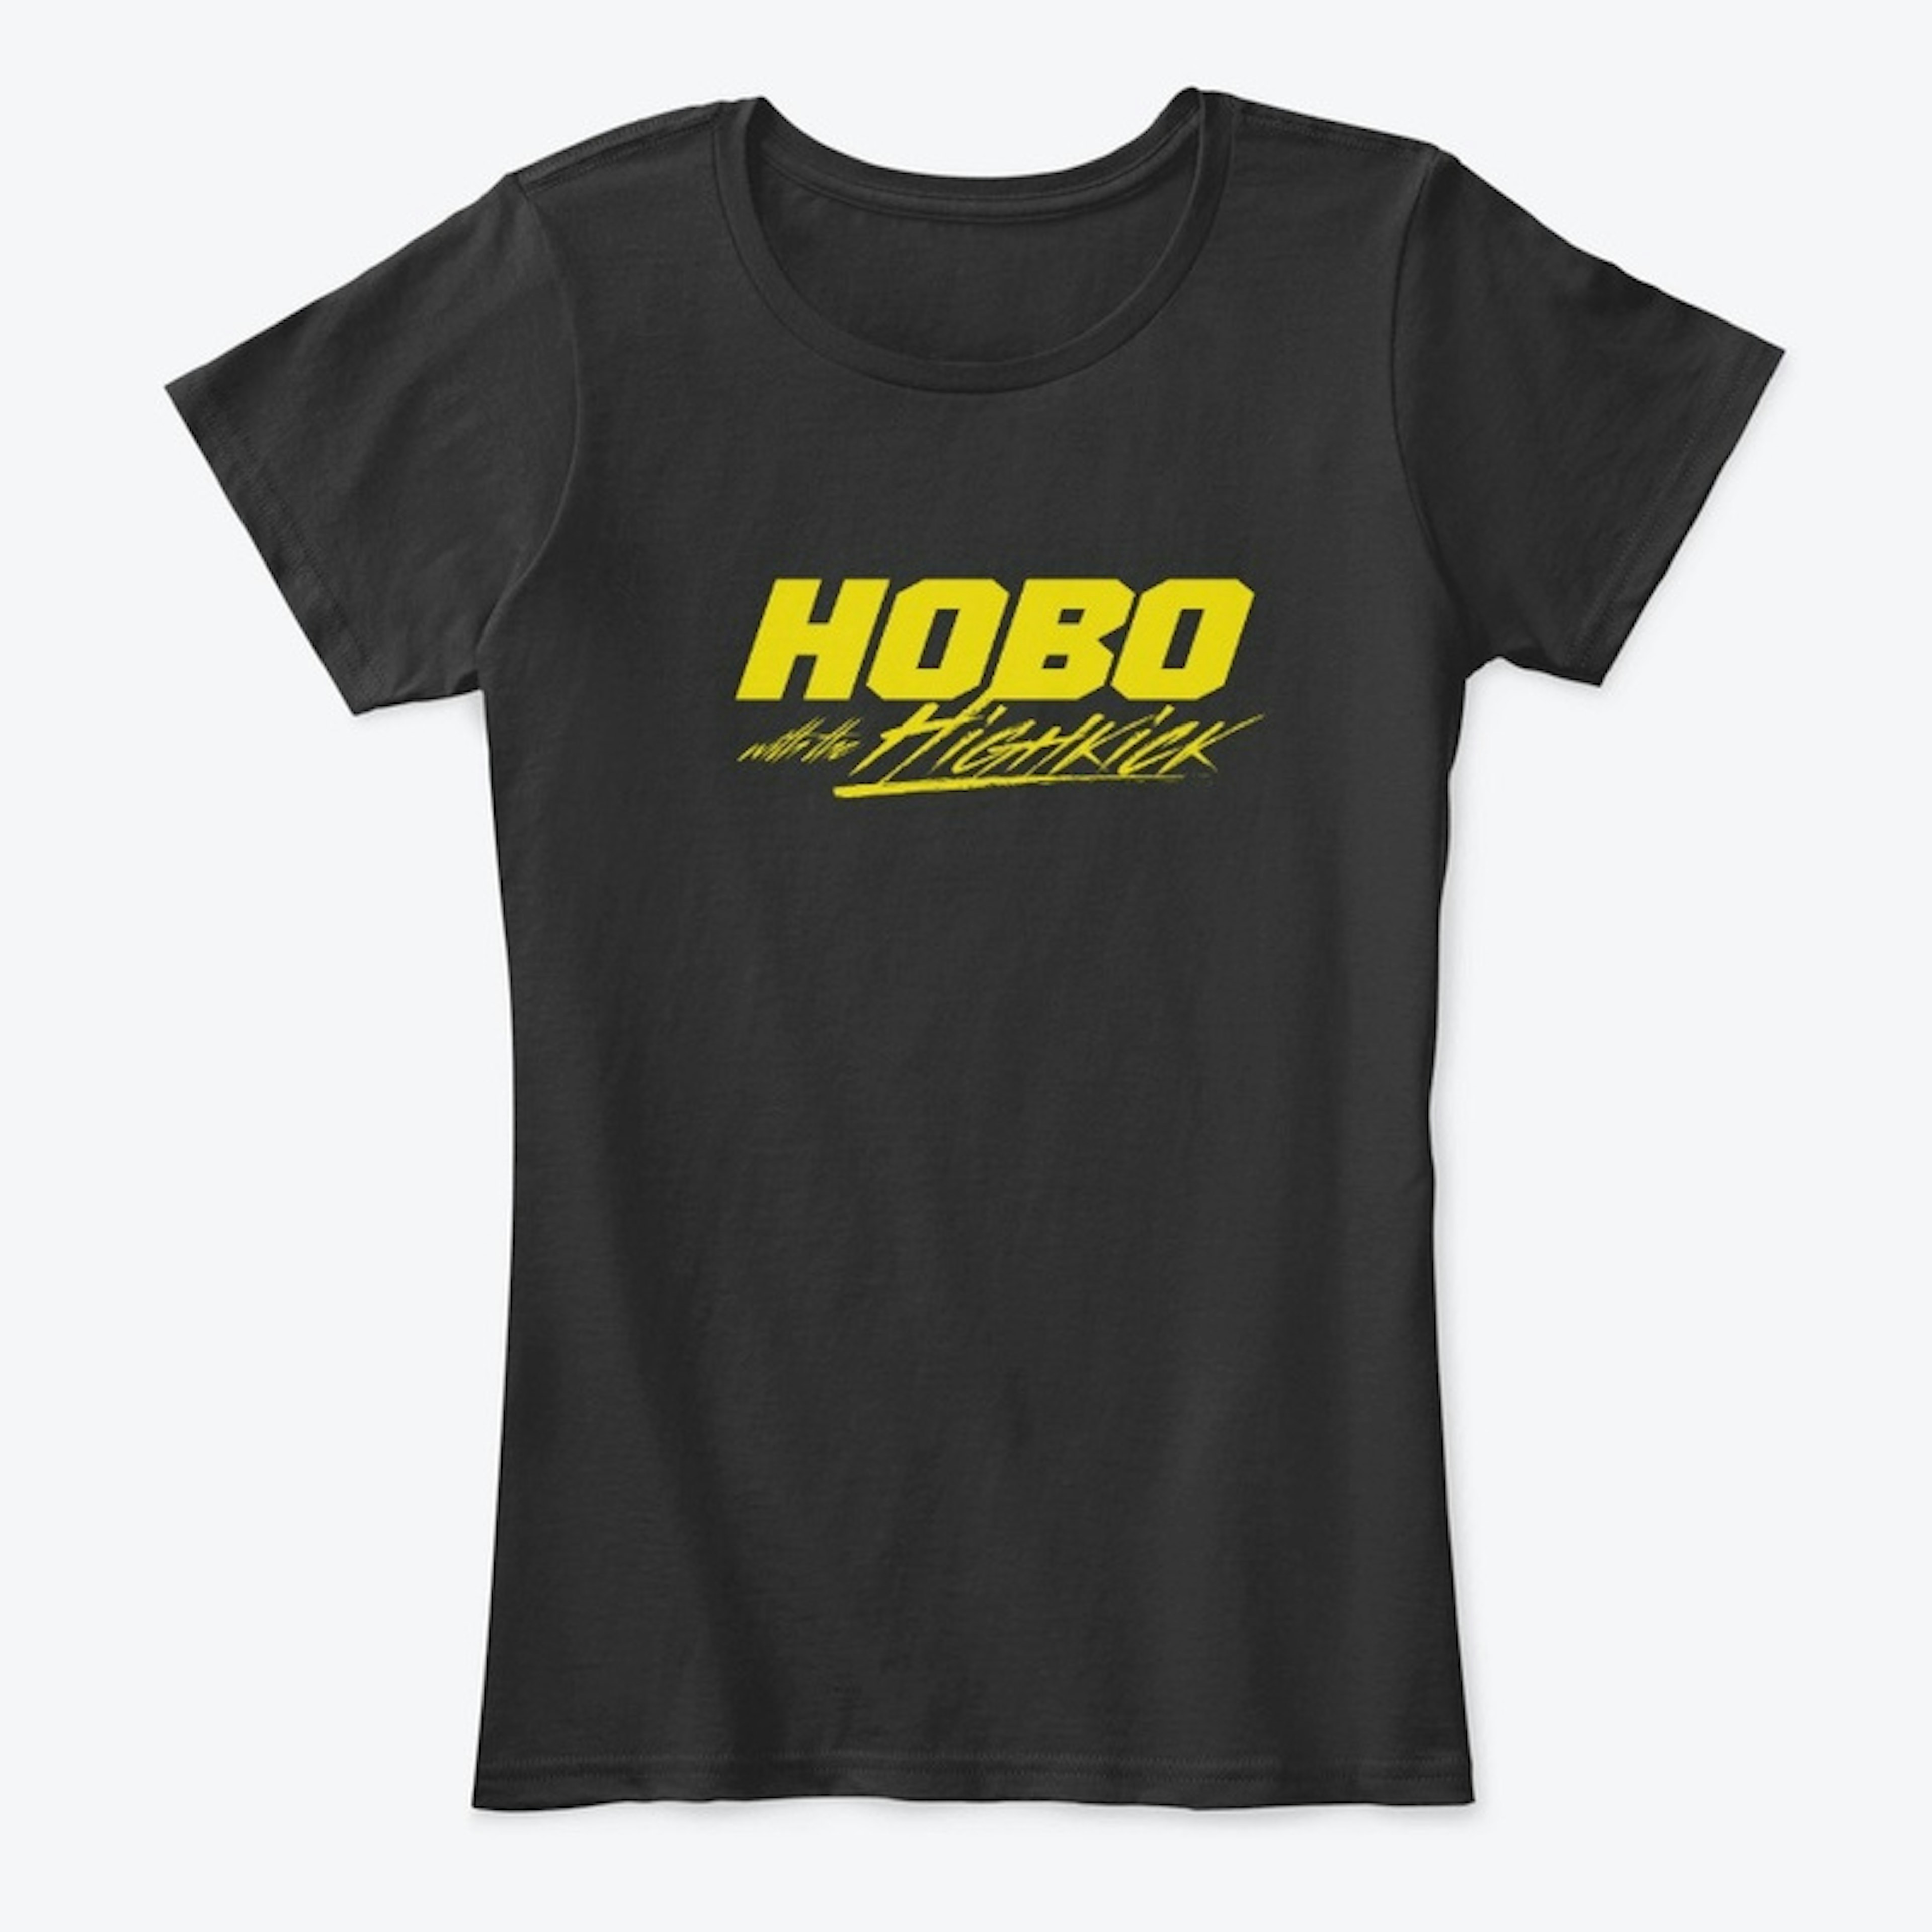 Hobo with the High Kick